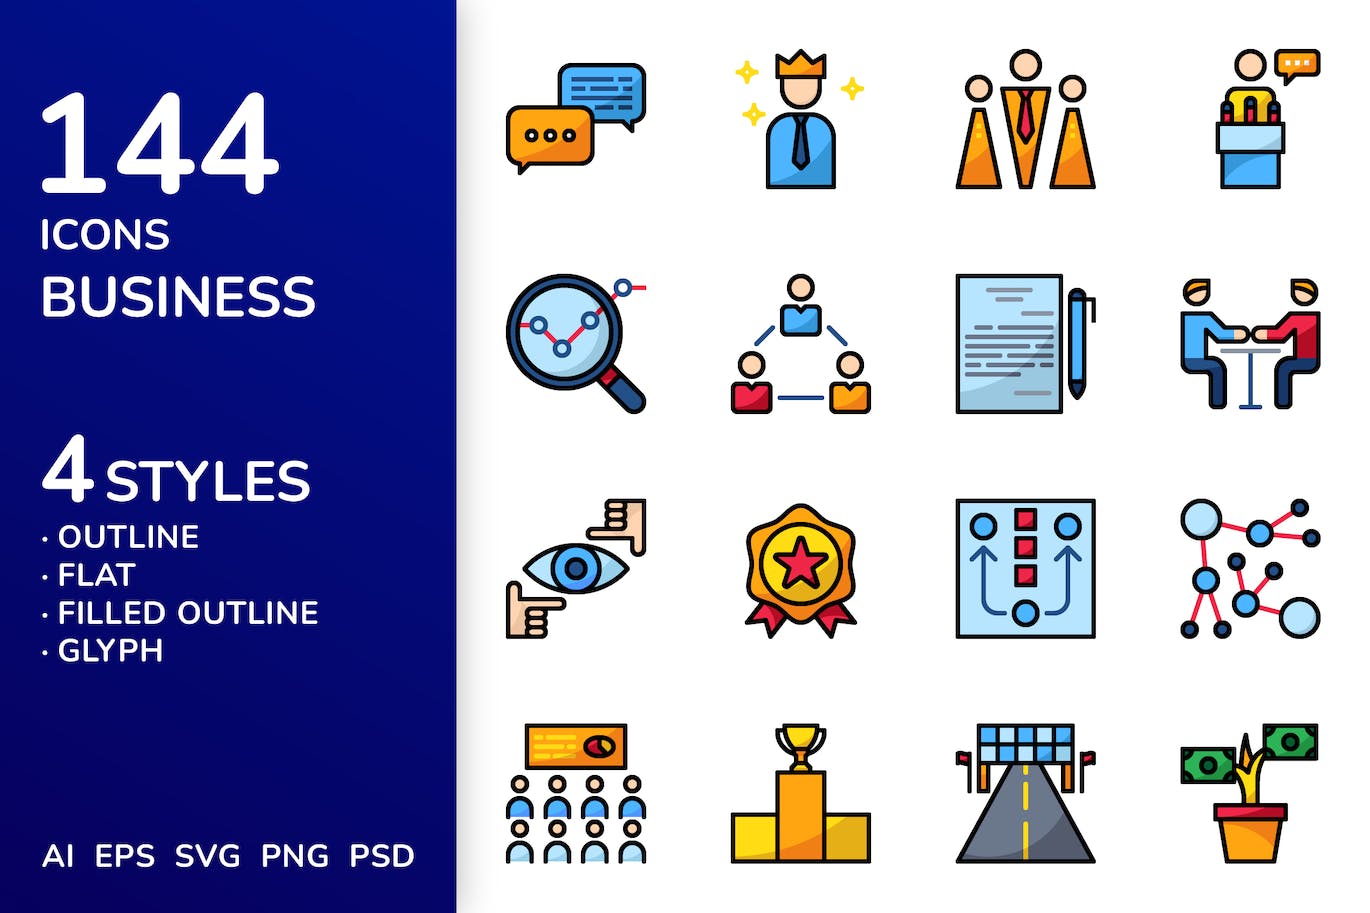 商业发展业务图标集 Business Icon Pack 图标素材 第1张